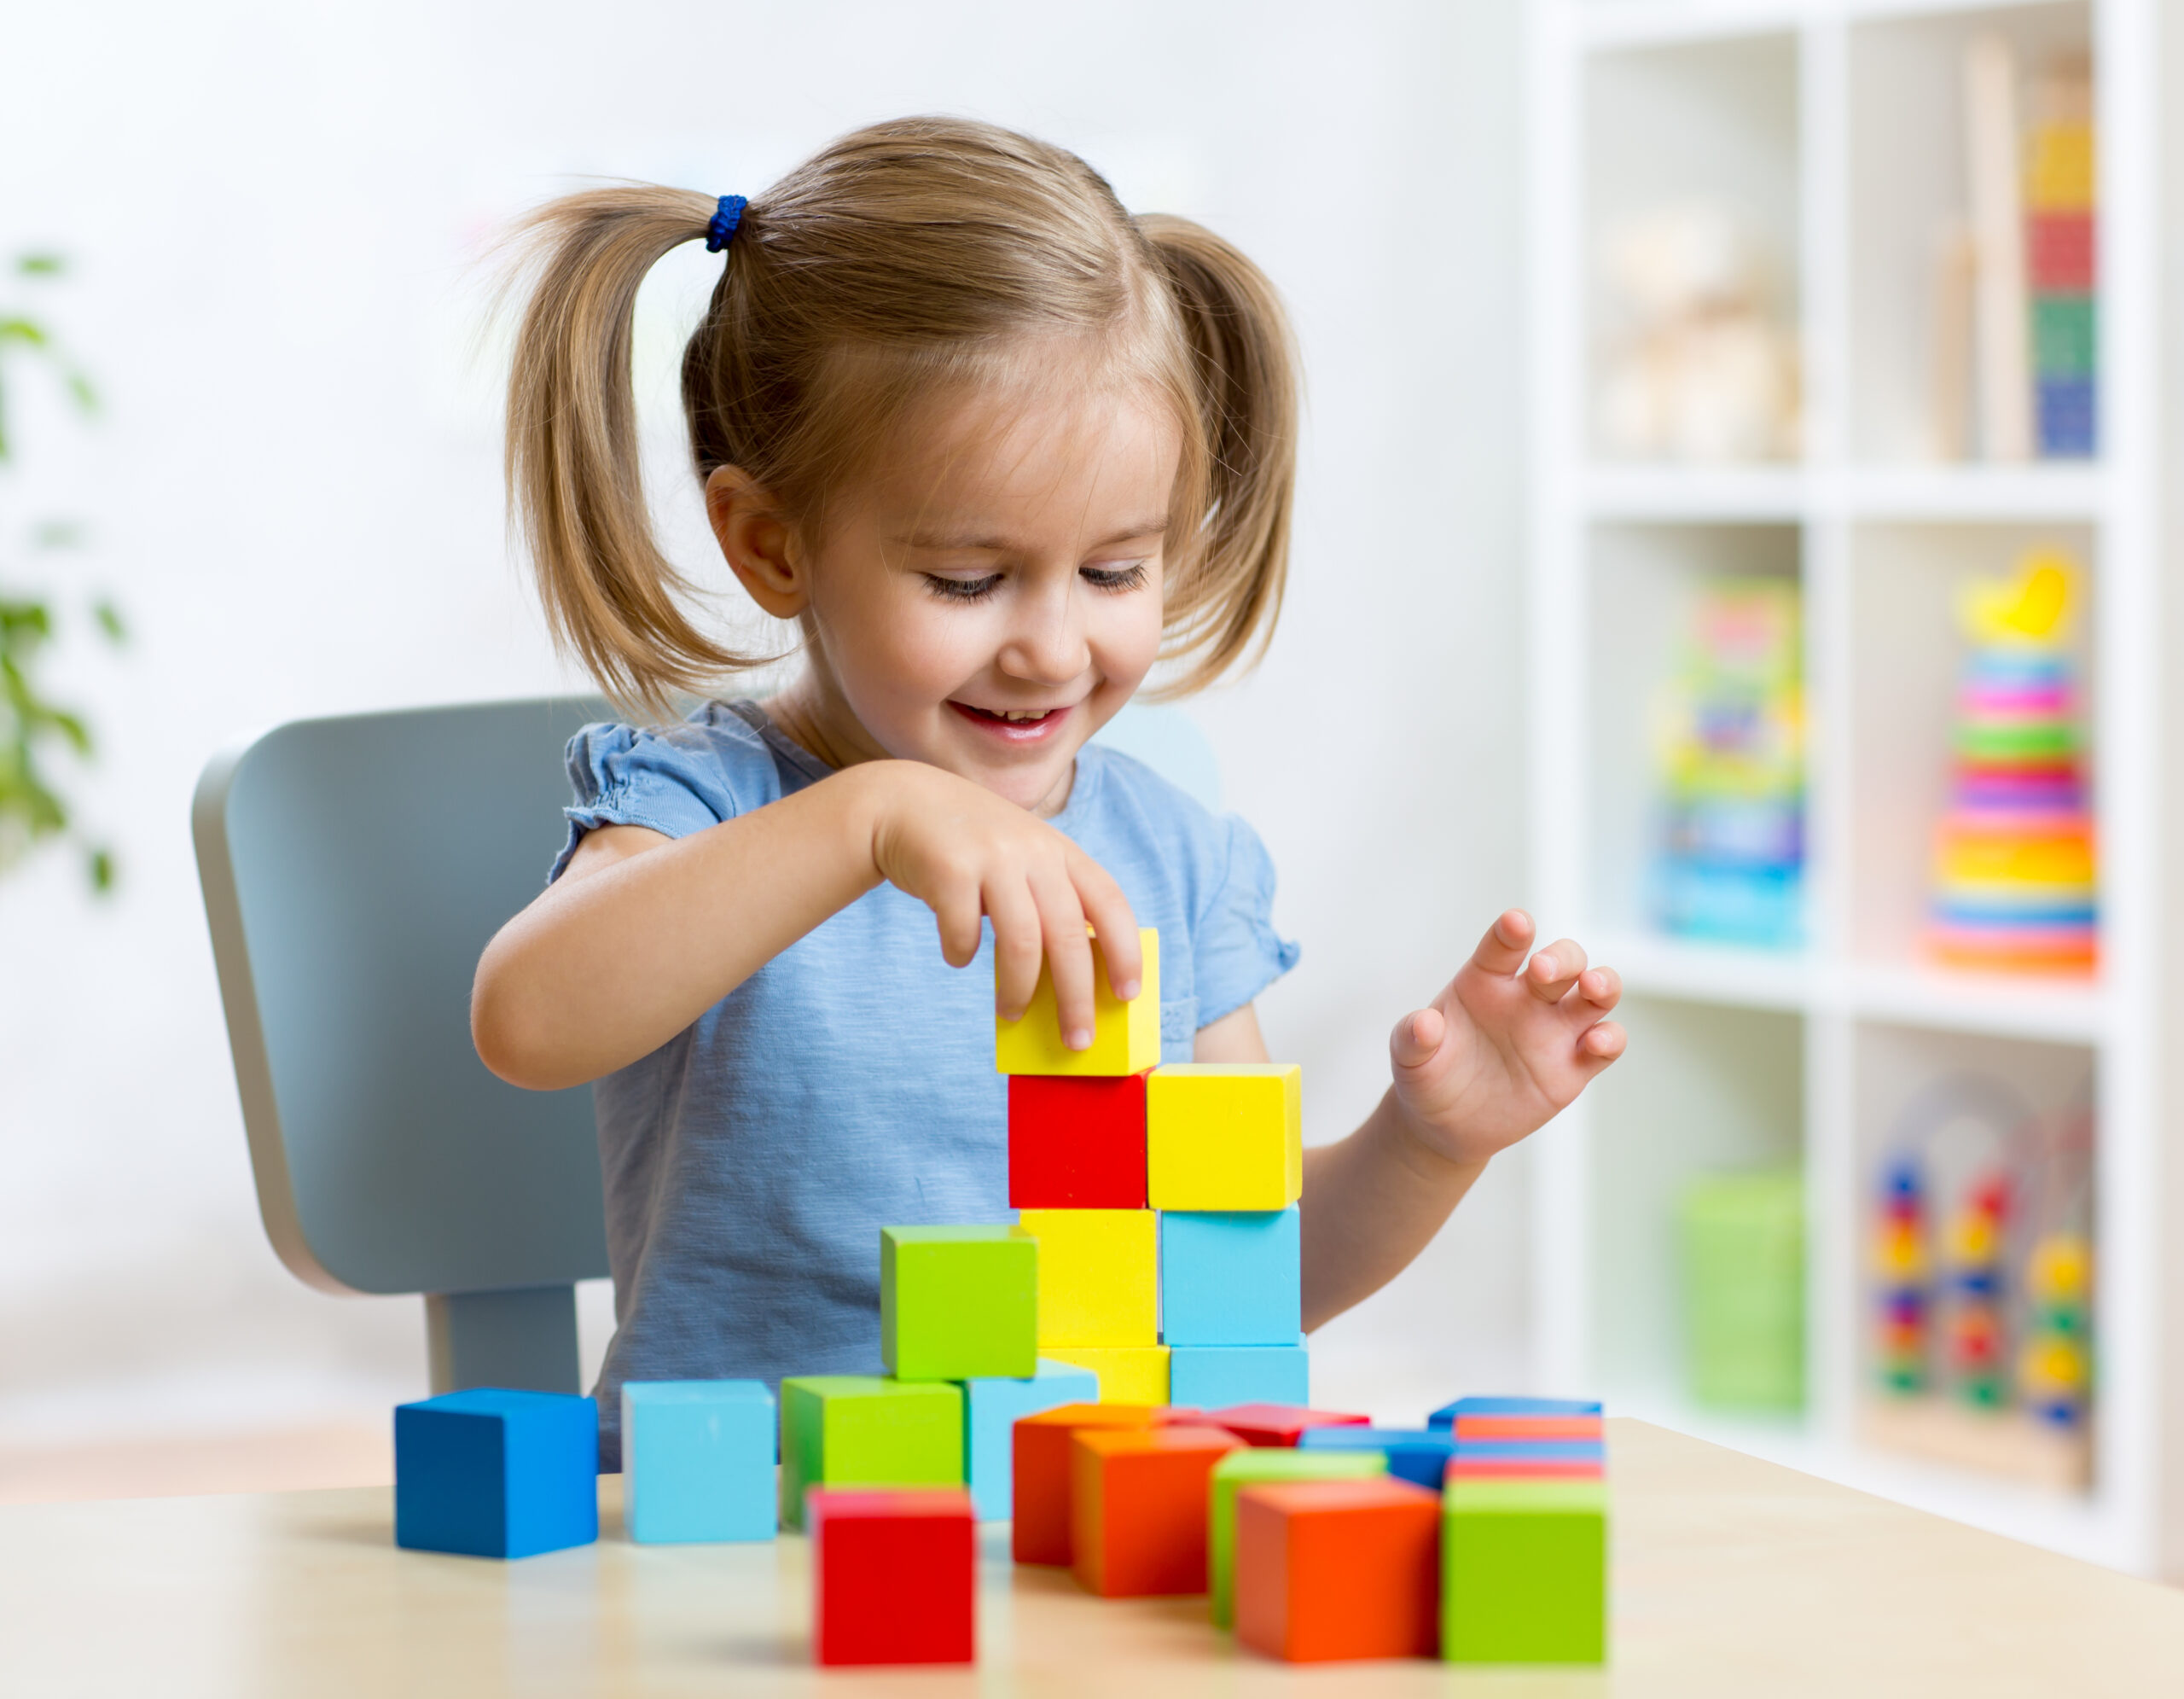 Лет мышления. Кубики для детей. Дети играют в кубики. Мышление детей. Ребенок собирает кубики.